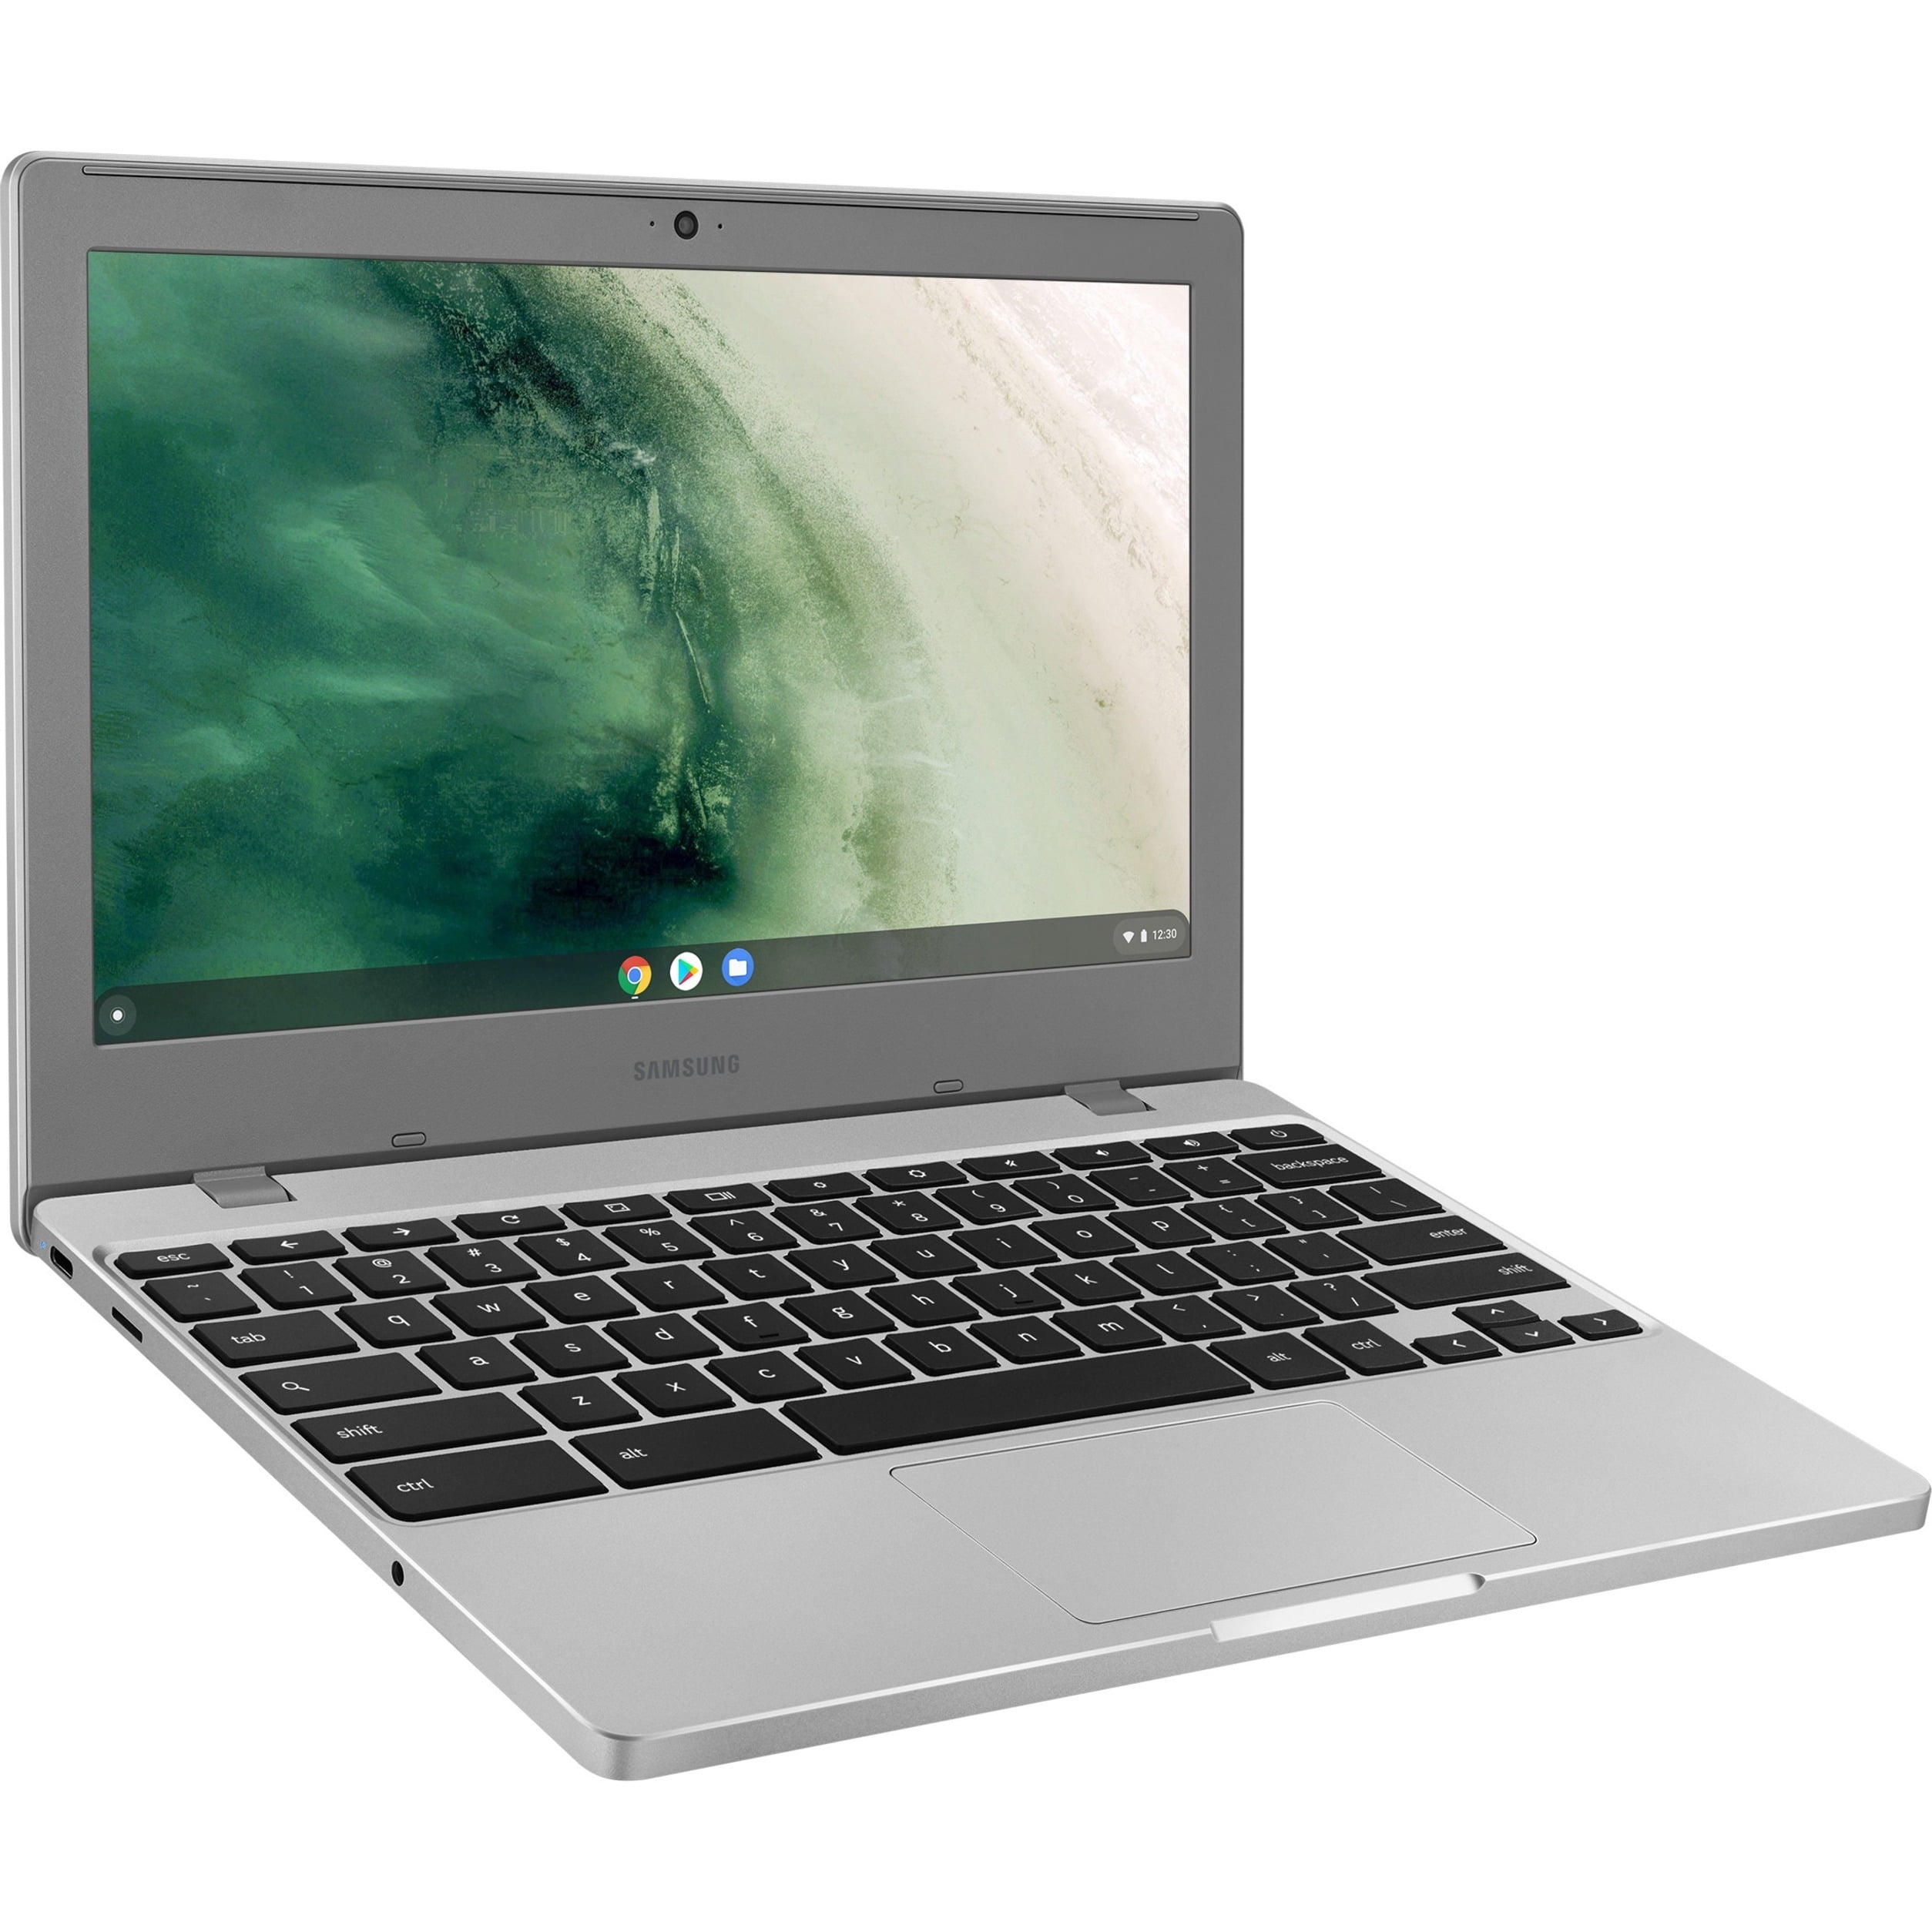 Samsung chromebook 4 apple macbook pro 15 inch 2 0ghz